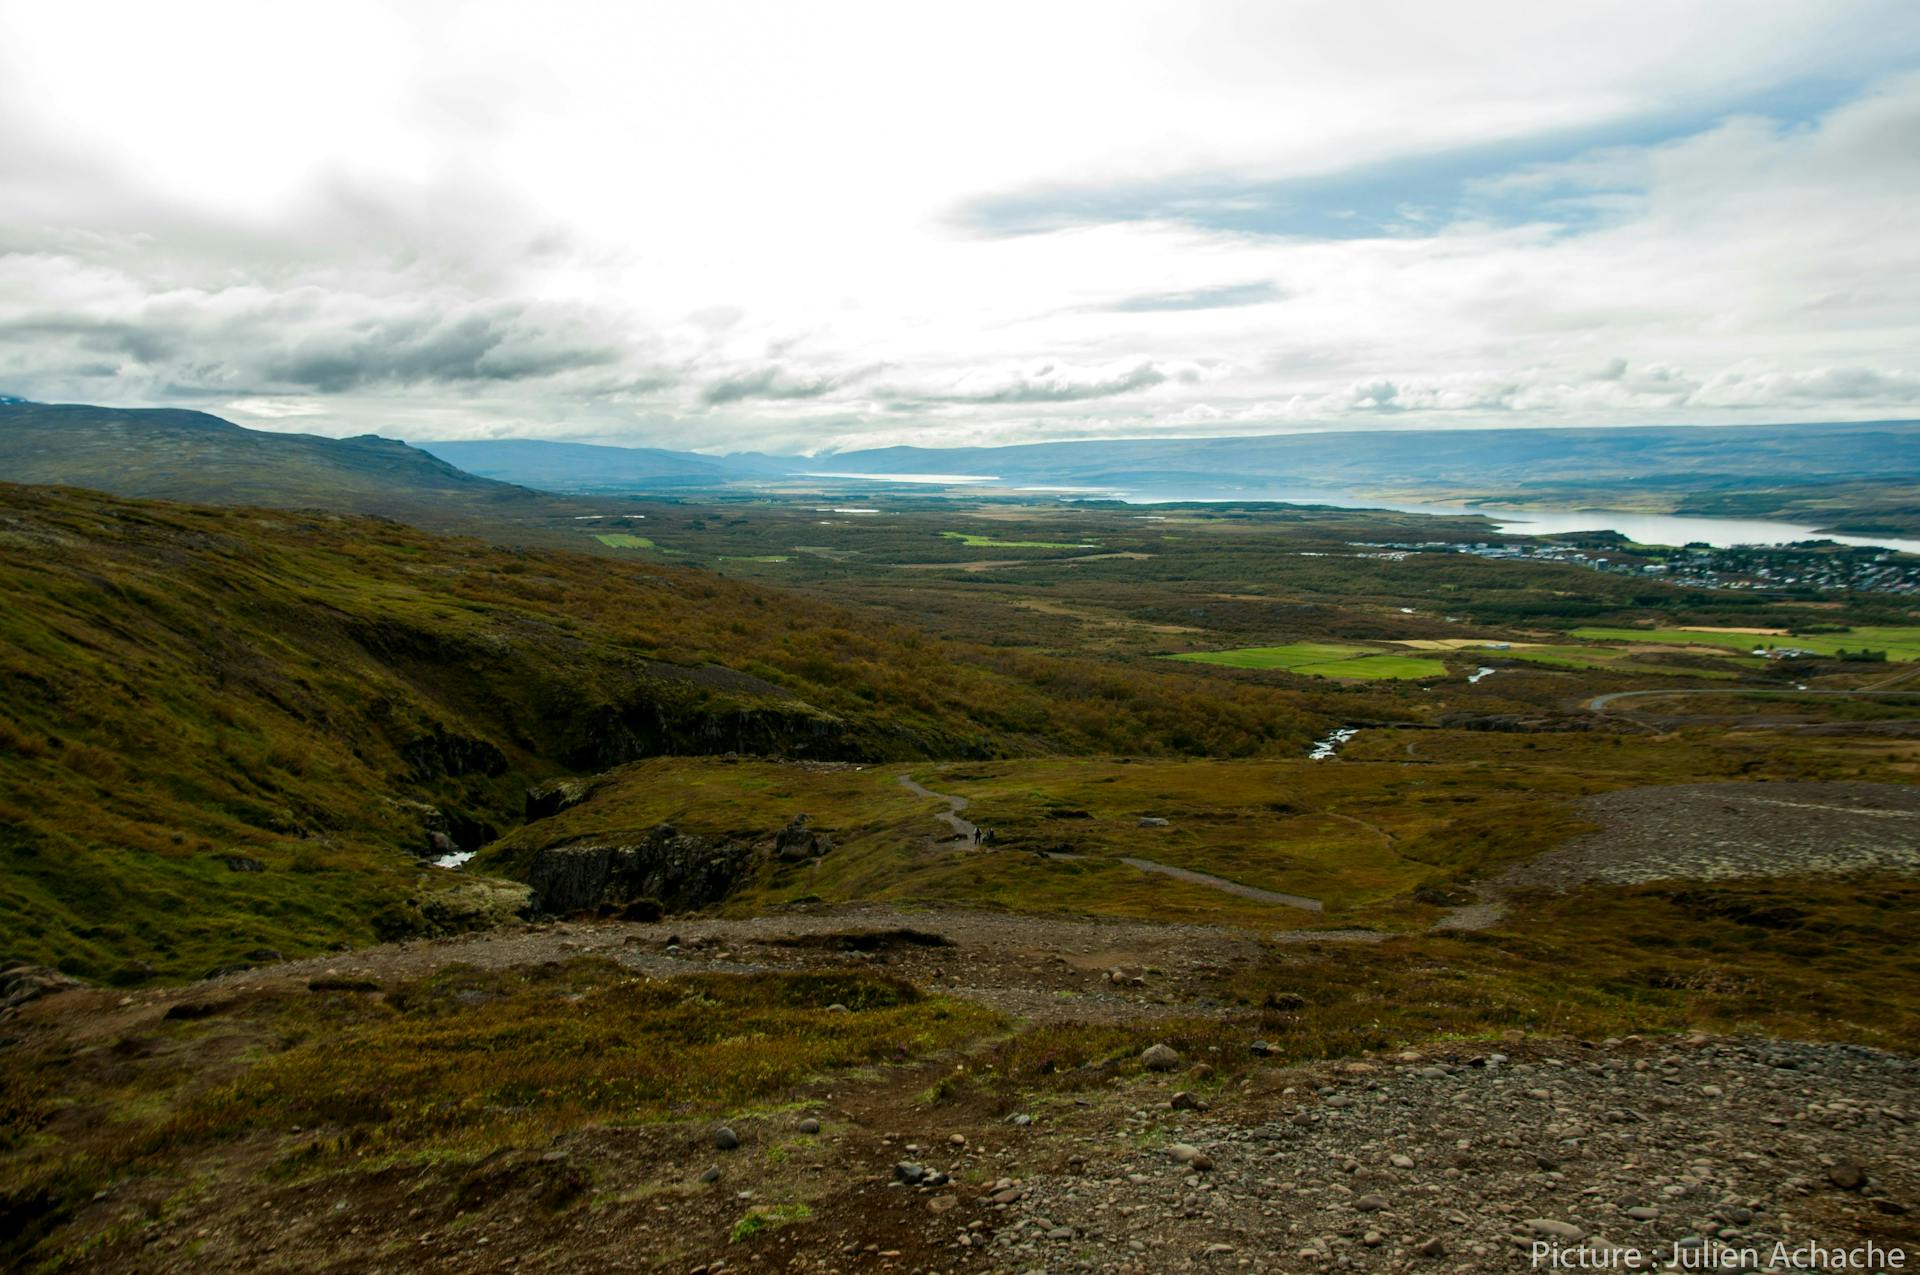 The described view on Egilsstadir, east Iceland